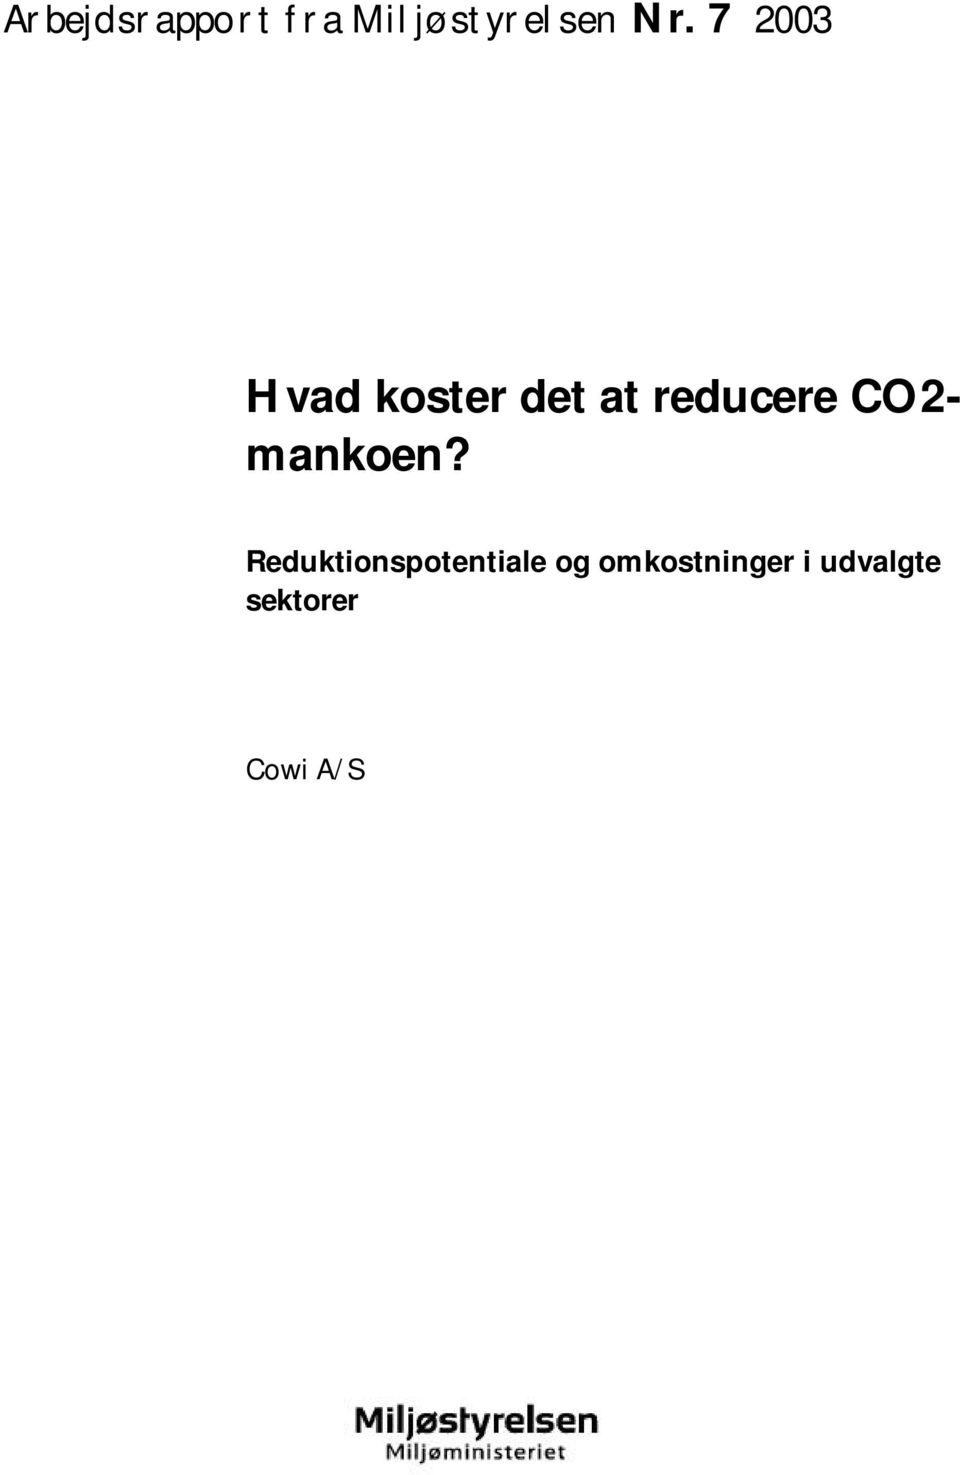 CO2- mankoen?